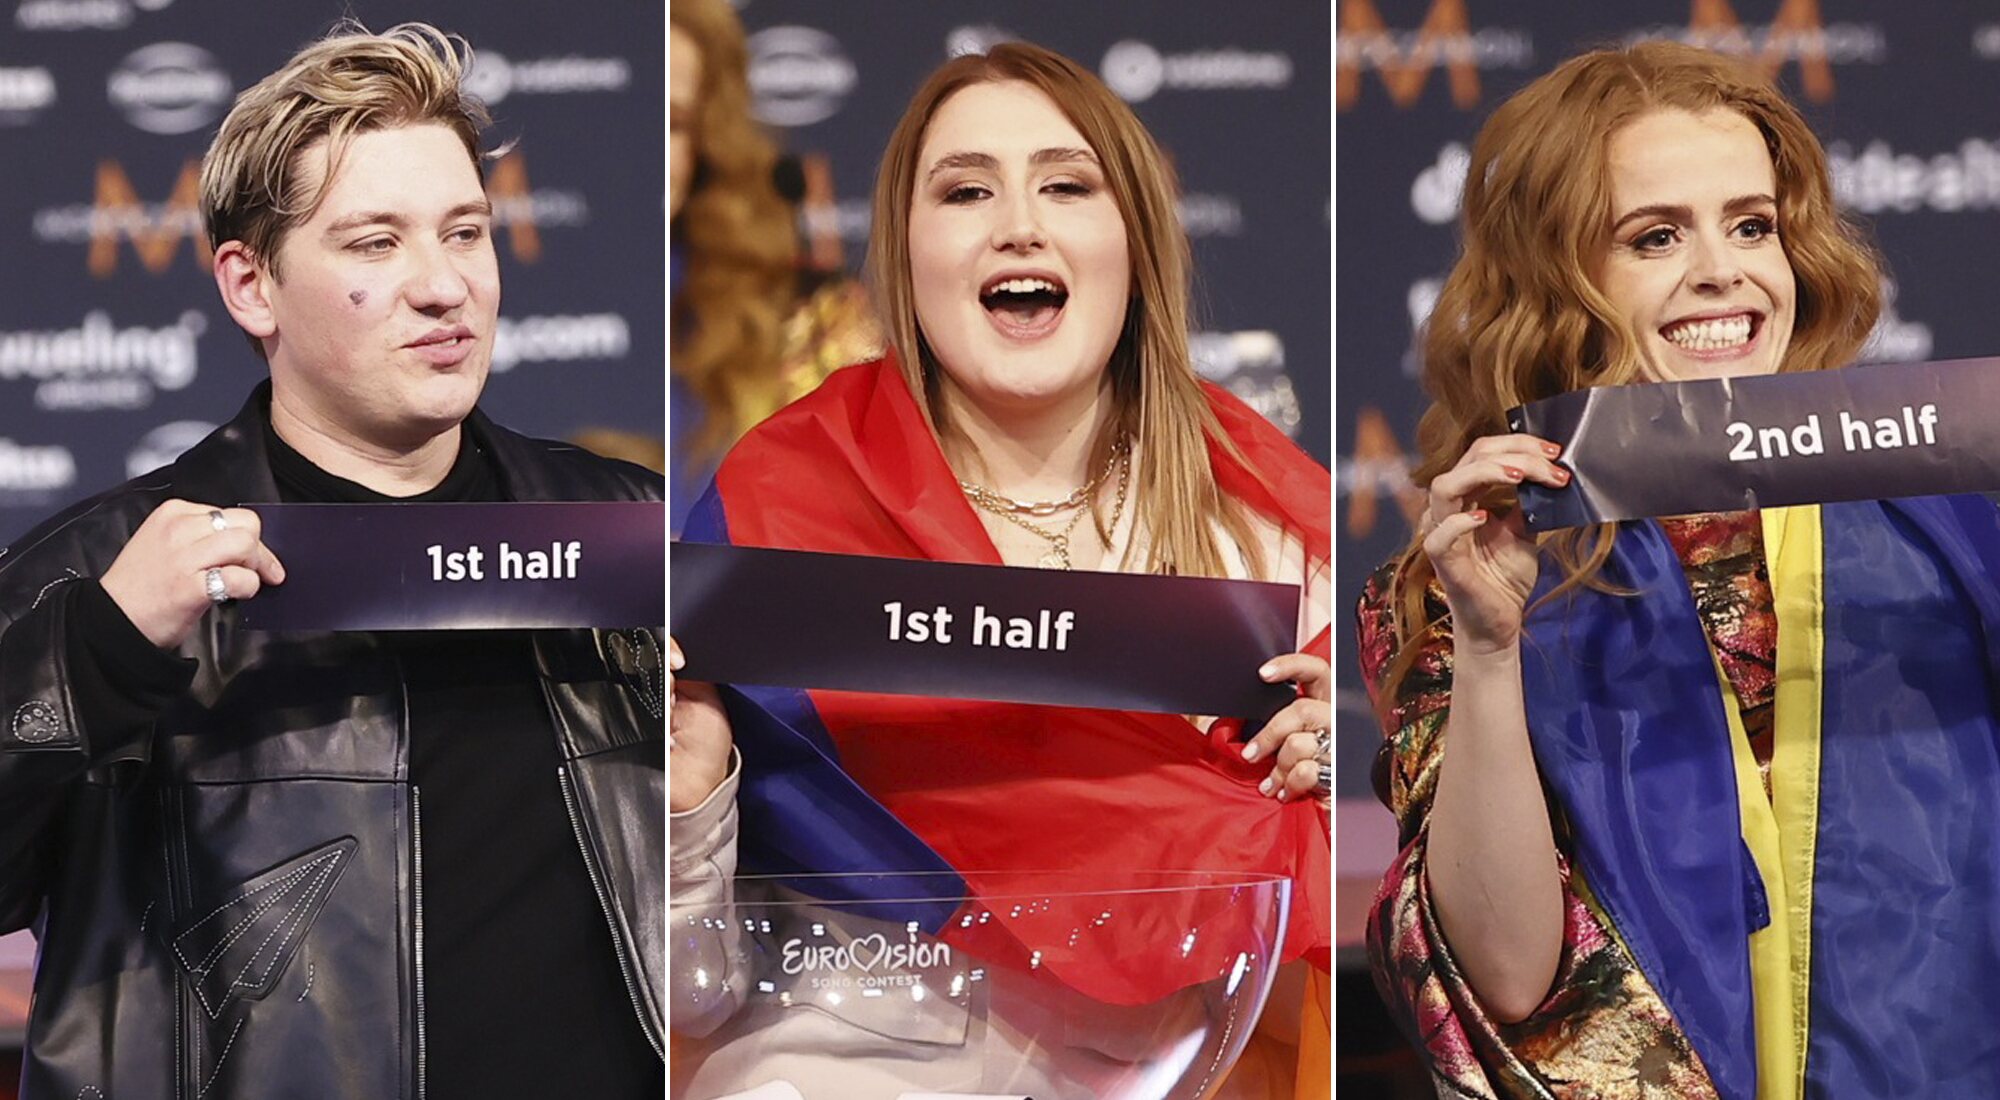 Los representantes de Suiza, Armenia e Islandia fueron los primeros en saber cuándo actuarían en la final de Eurovisión 2022